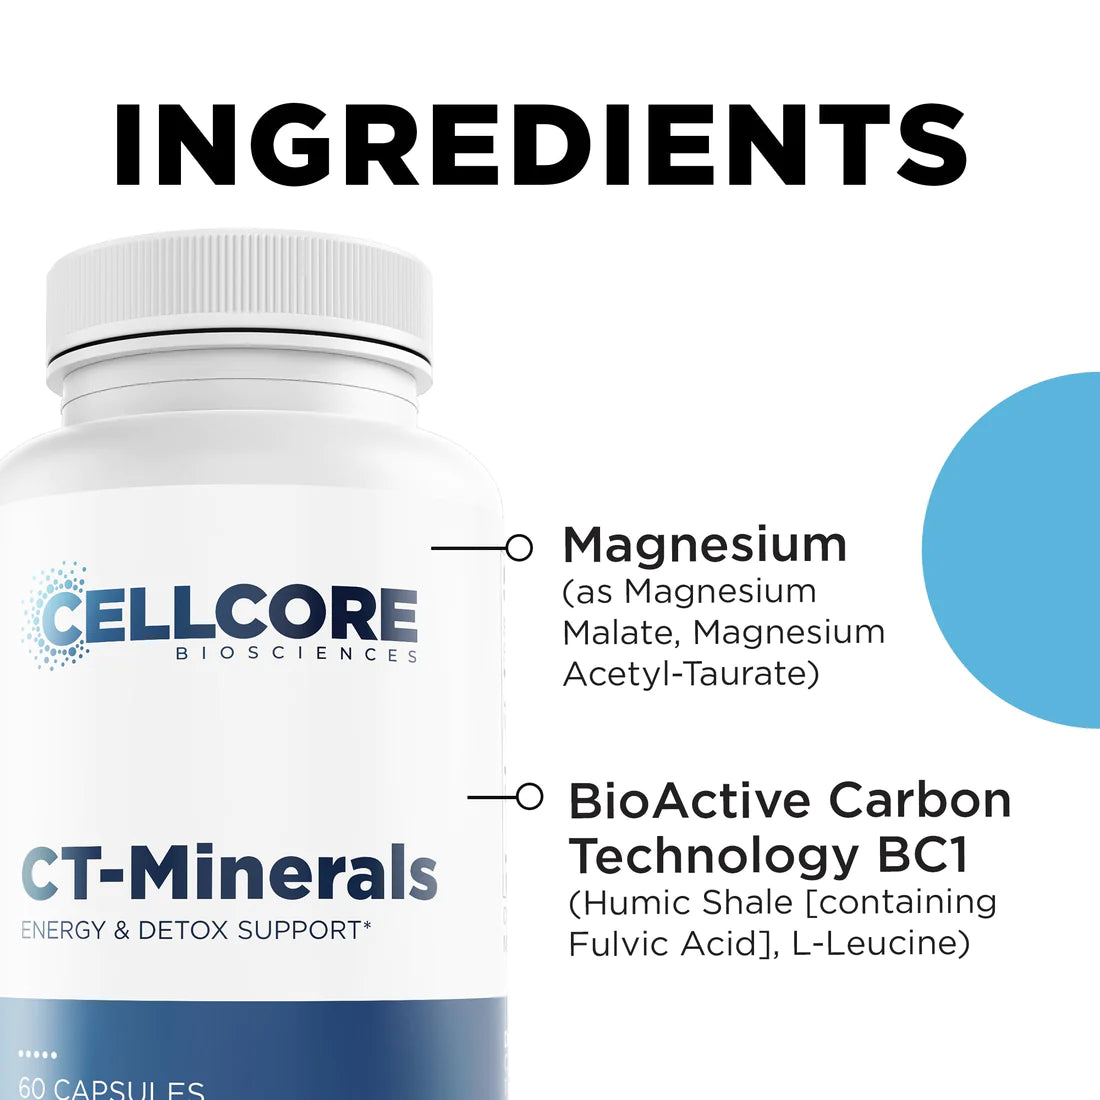 CT-Minerals